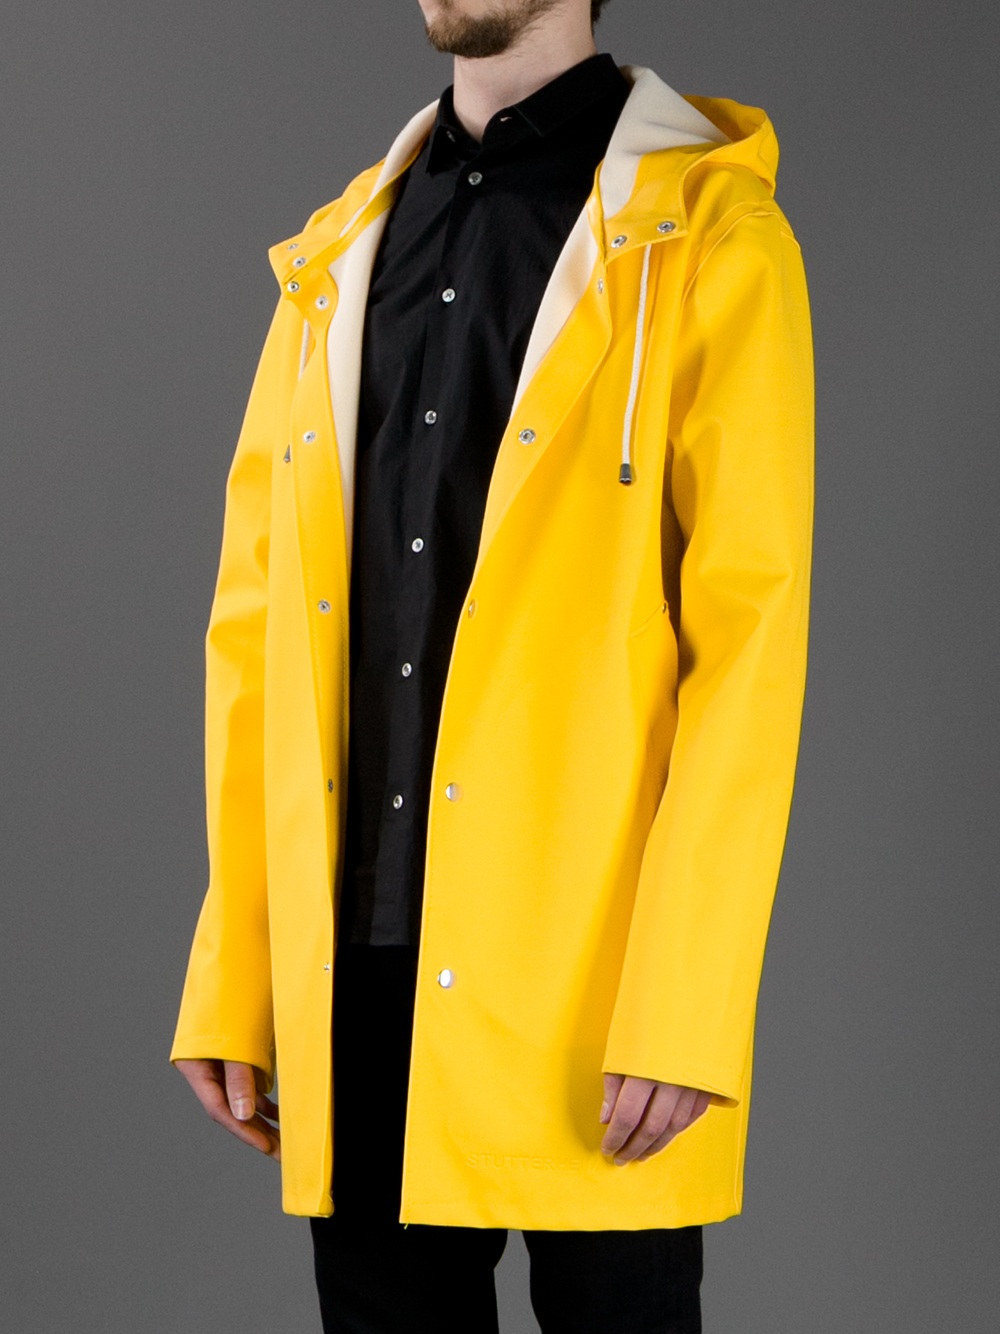 Lyst - Stutterheim Stockholm Raincoat in Yellow for Men